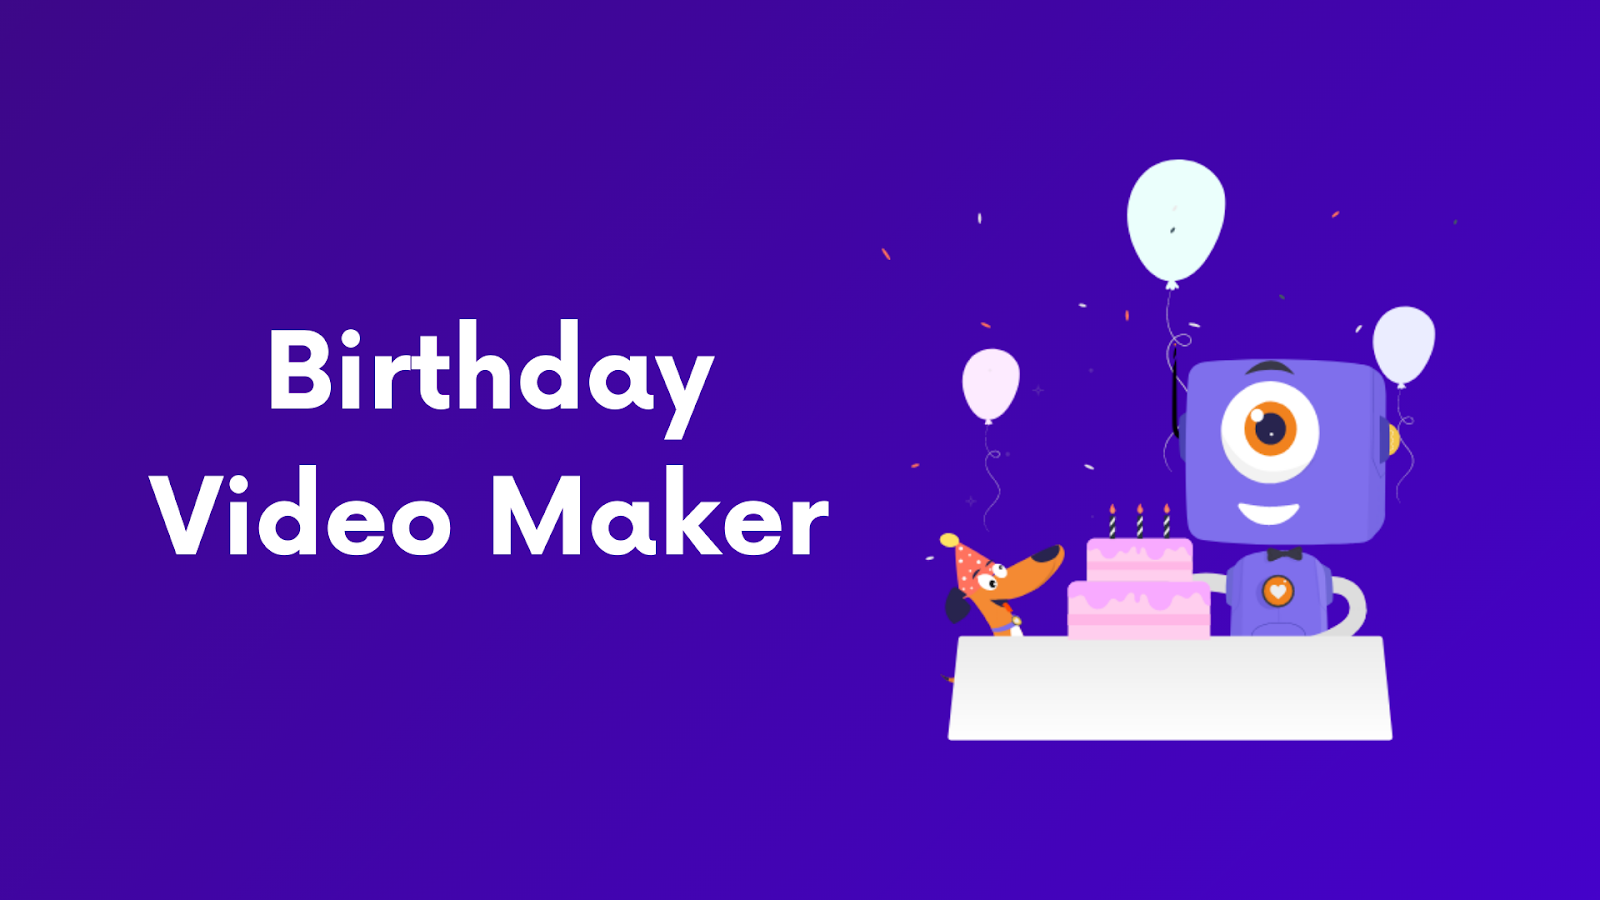 Tại sao phải làm video sinh nhật một cách đơn giản và tầm thường khi bạn có thể tạo ra một Birthday Video Maker tuyệt đẹp cho người thân của mình? Với công cụ này, bạn có thể tạo ra một video sinh nhật đầy ý nghĩa và đầy cảm xúc chỉ trong vài phút. Hãy xem hình ảnh liên quan để bắt đầu.